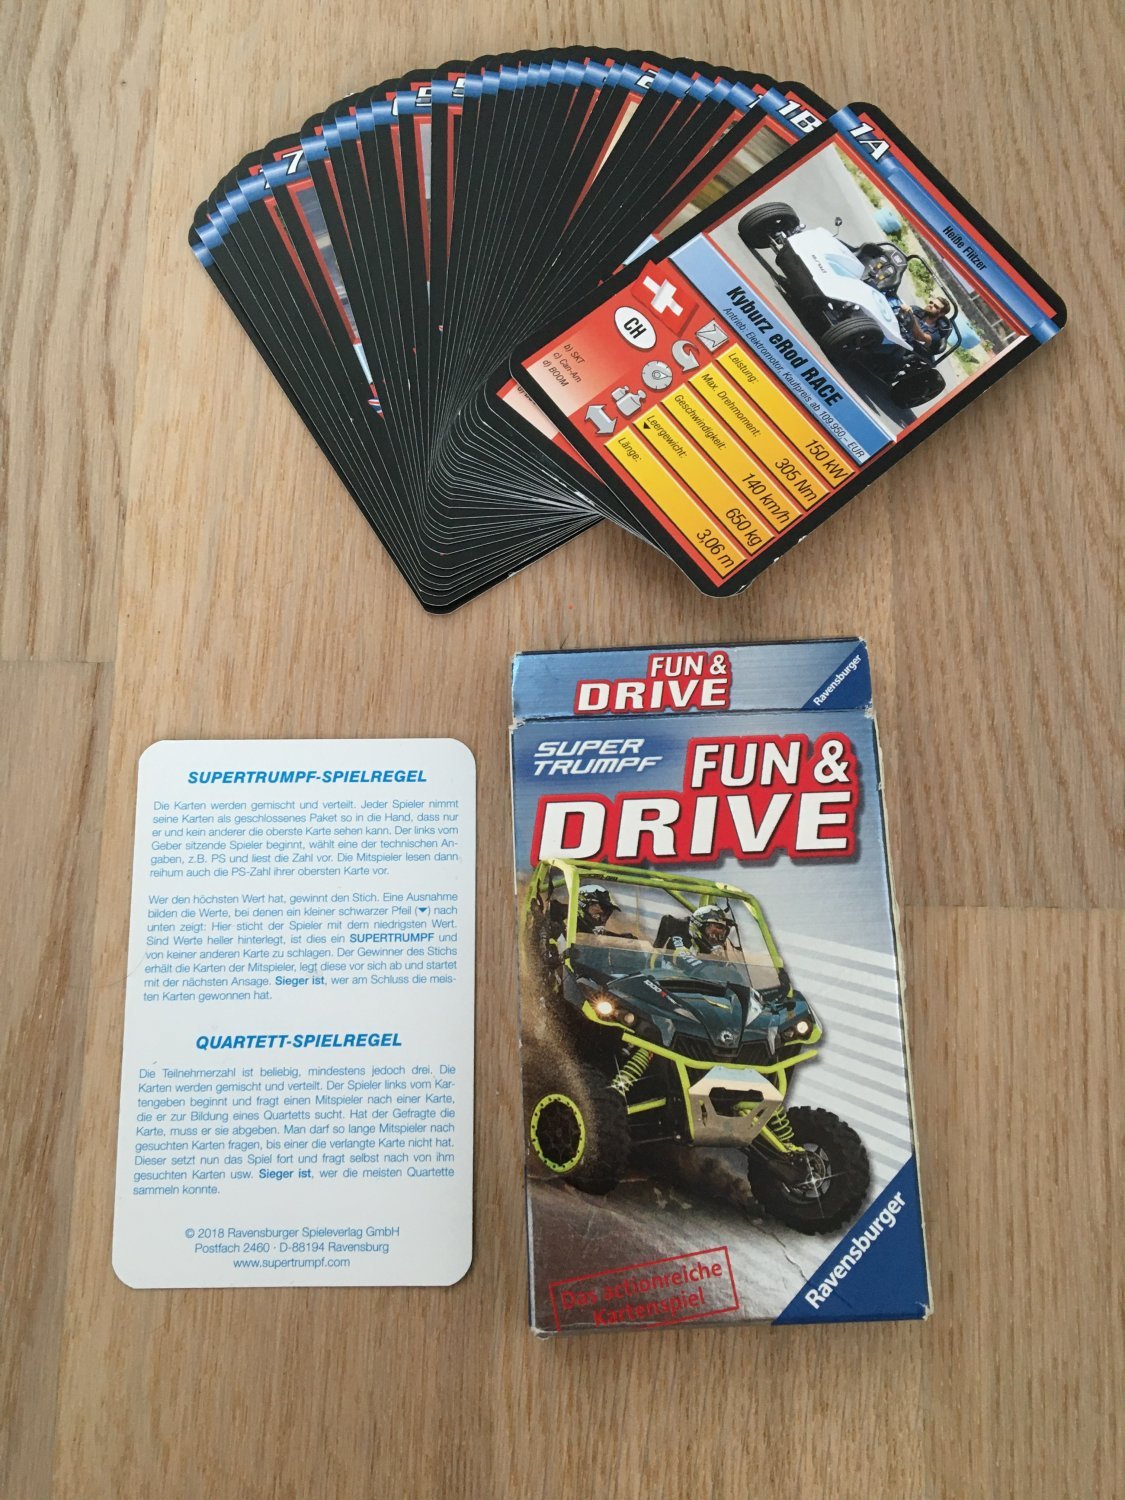 Fun & Drive Das Actionreiche Kartenspiel Auto Quartett“ – Spiel